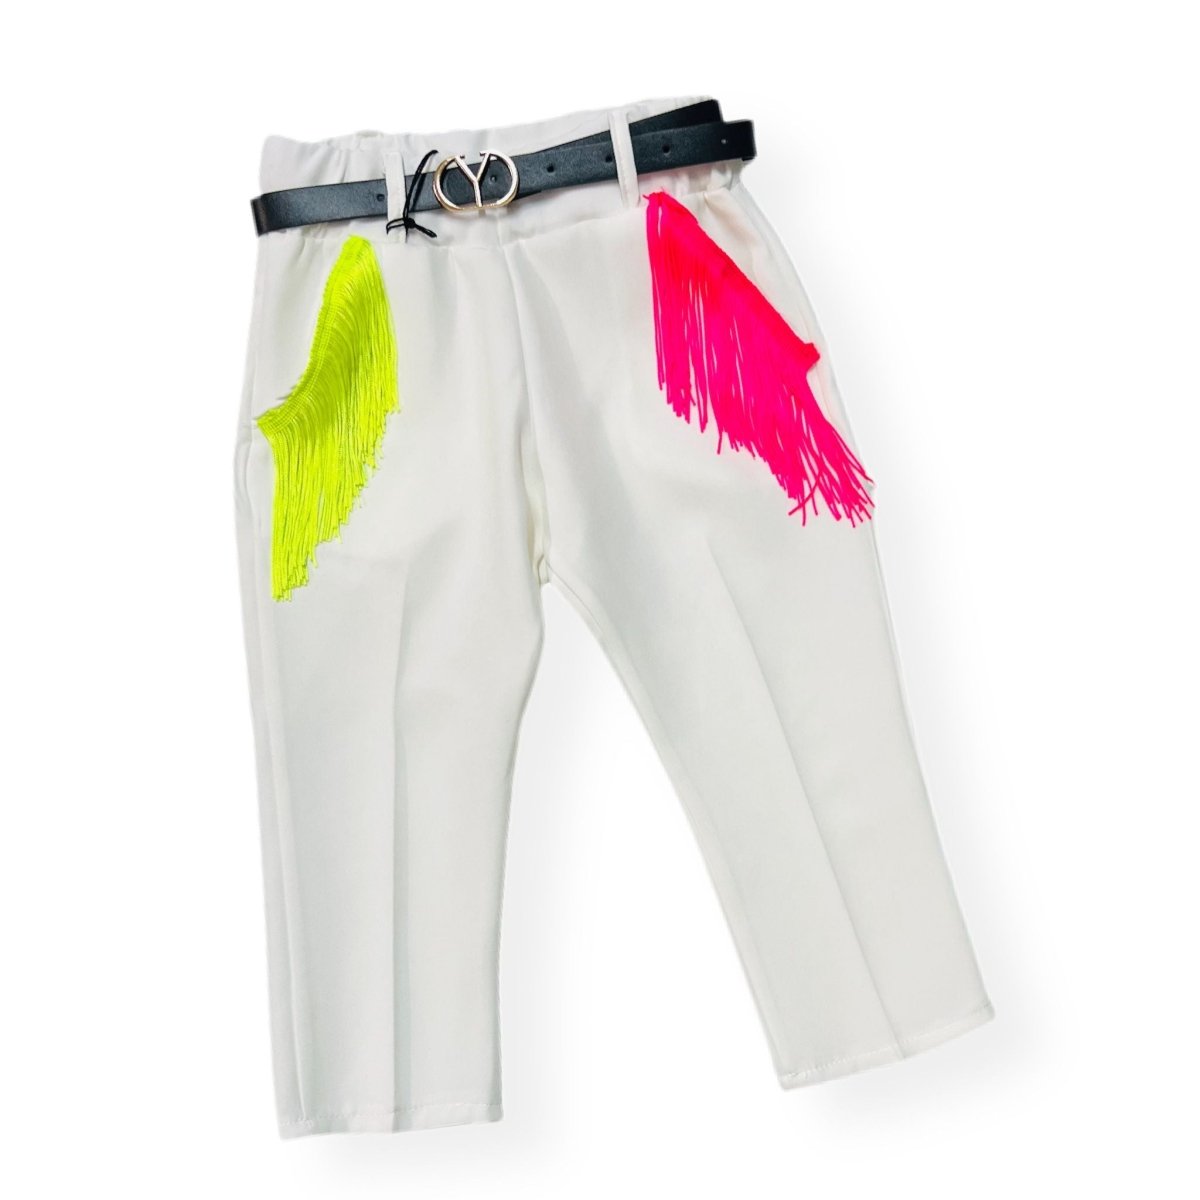 Pantalone Capri con Frange leggero Bimba - Mstore016 - Pantalone Bimba - Granada